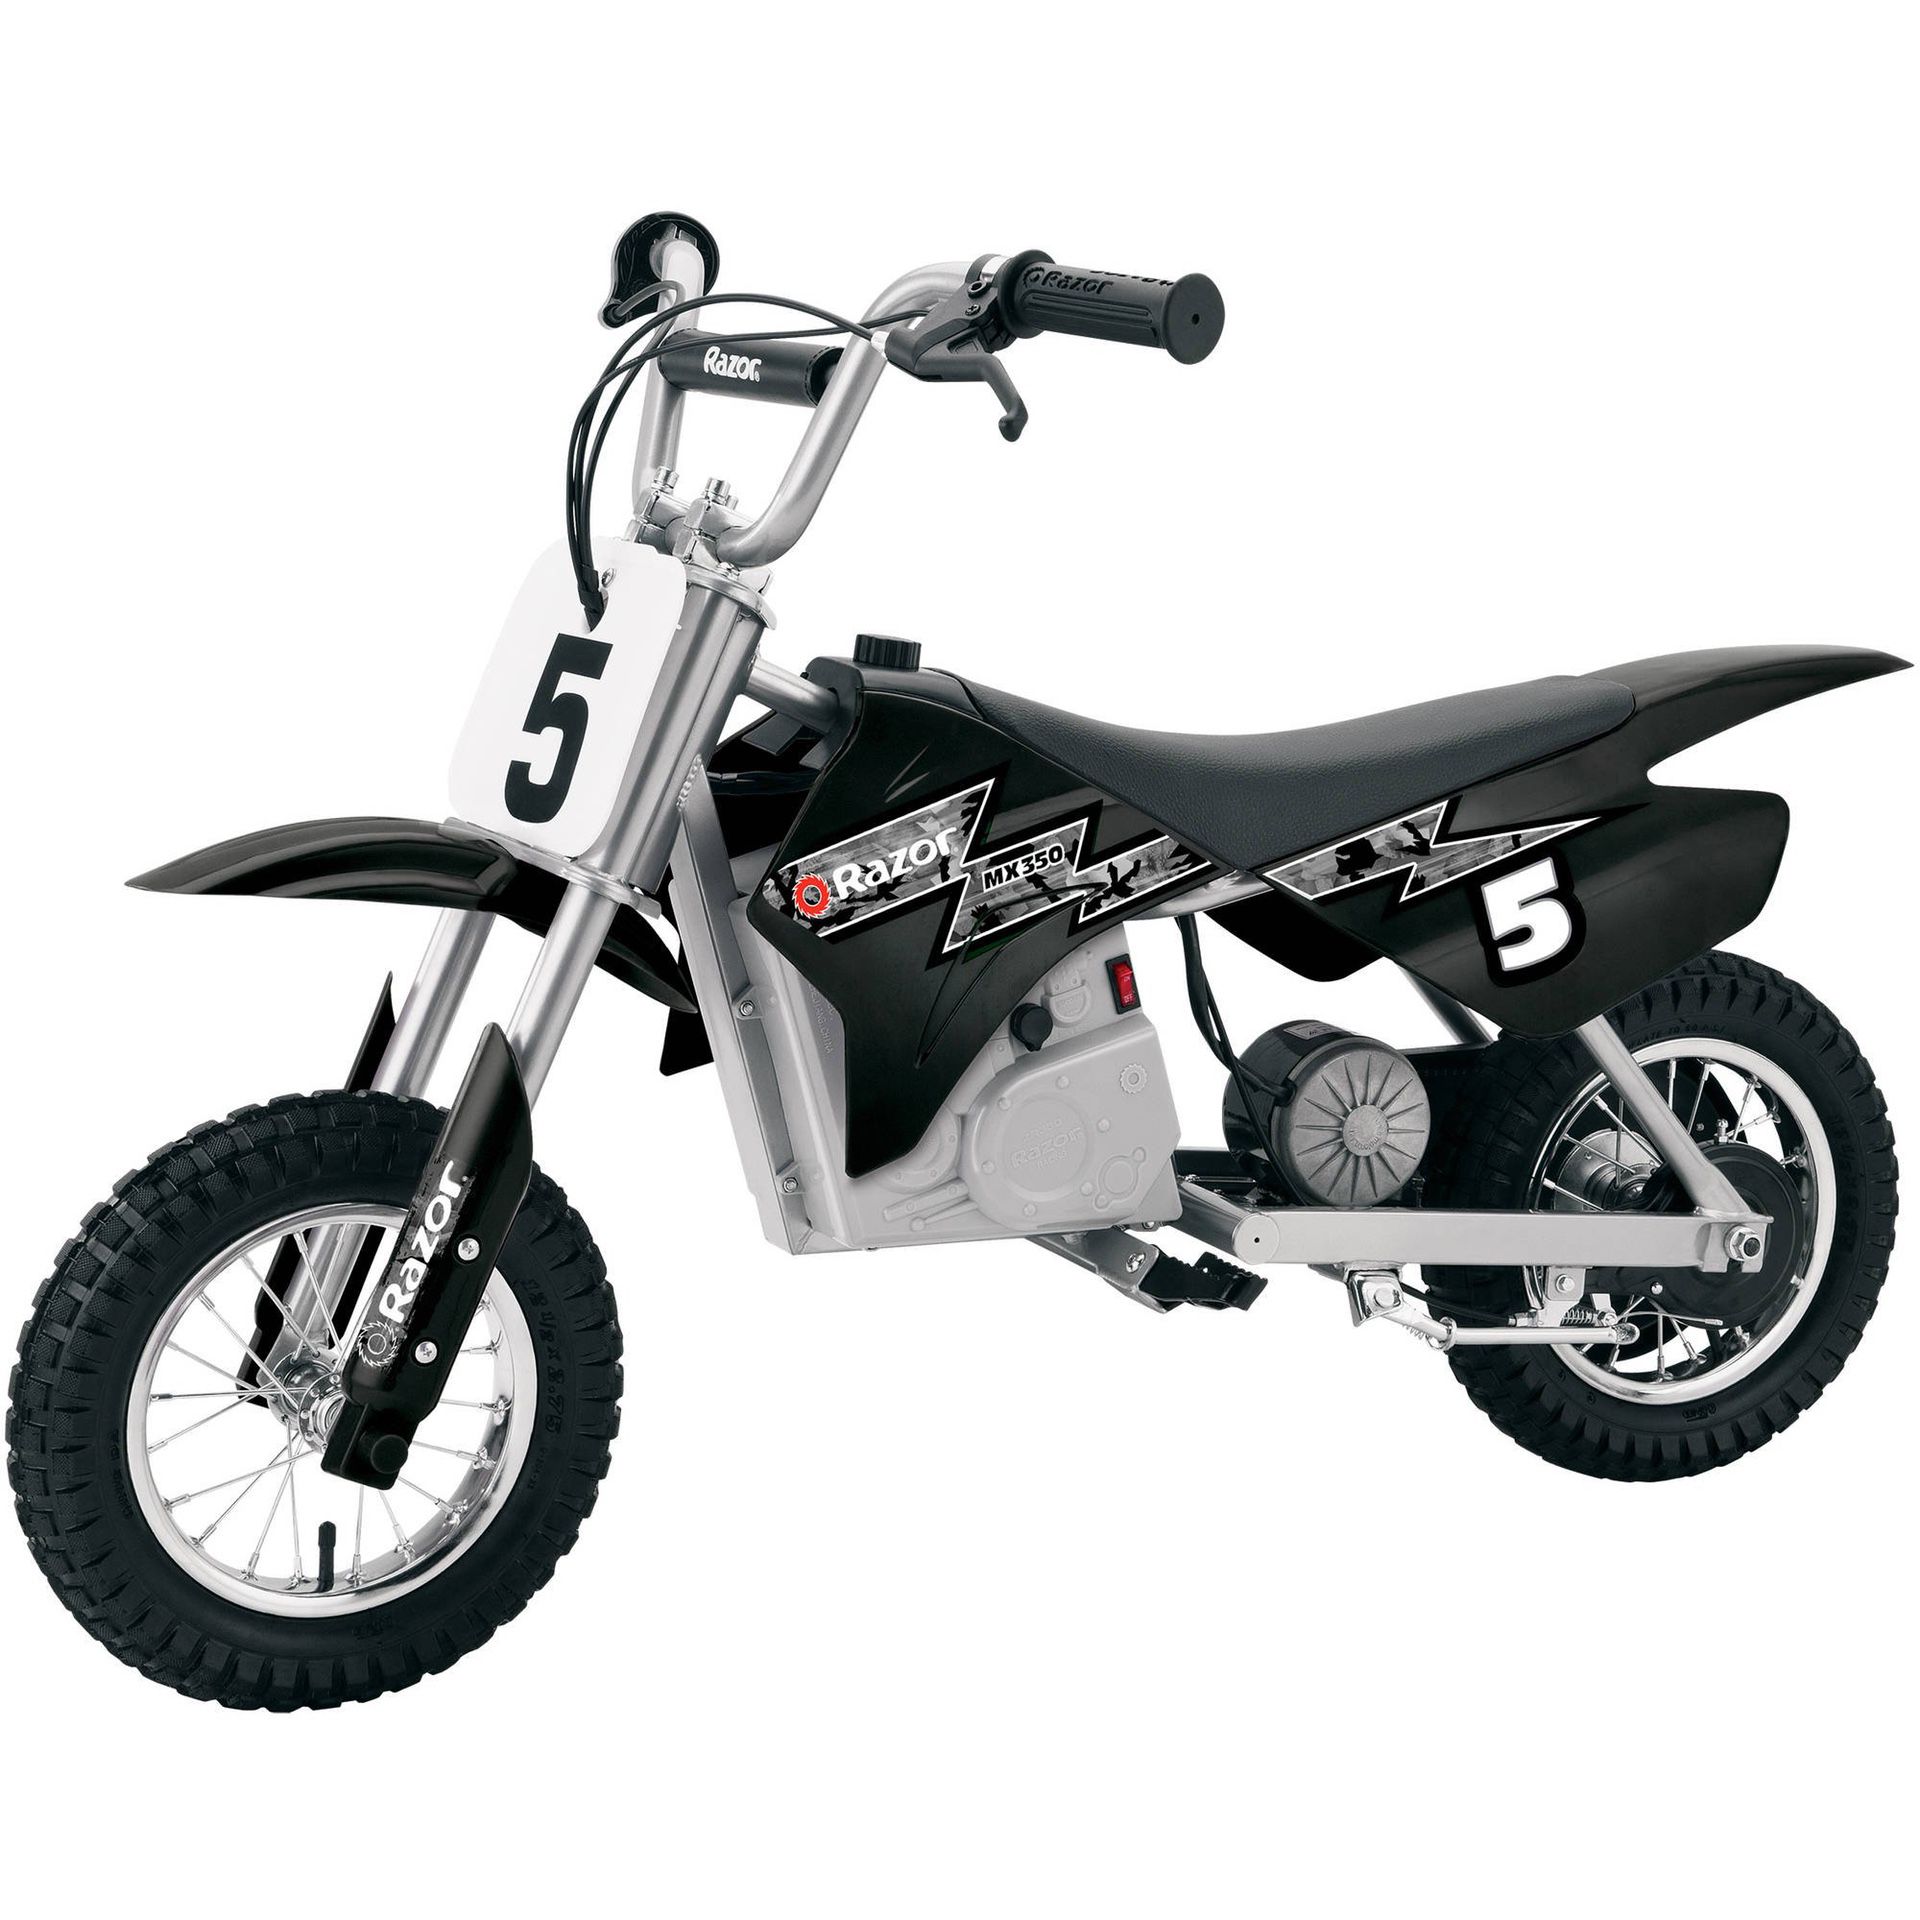 New‼️ Razor MX350 24V Dirt Bike